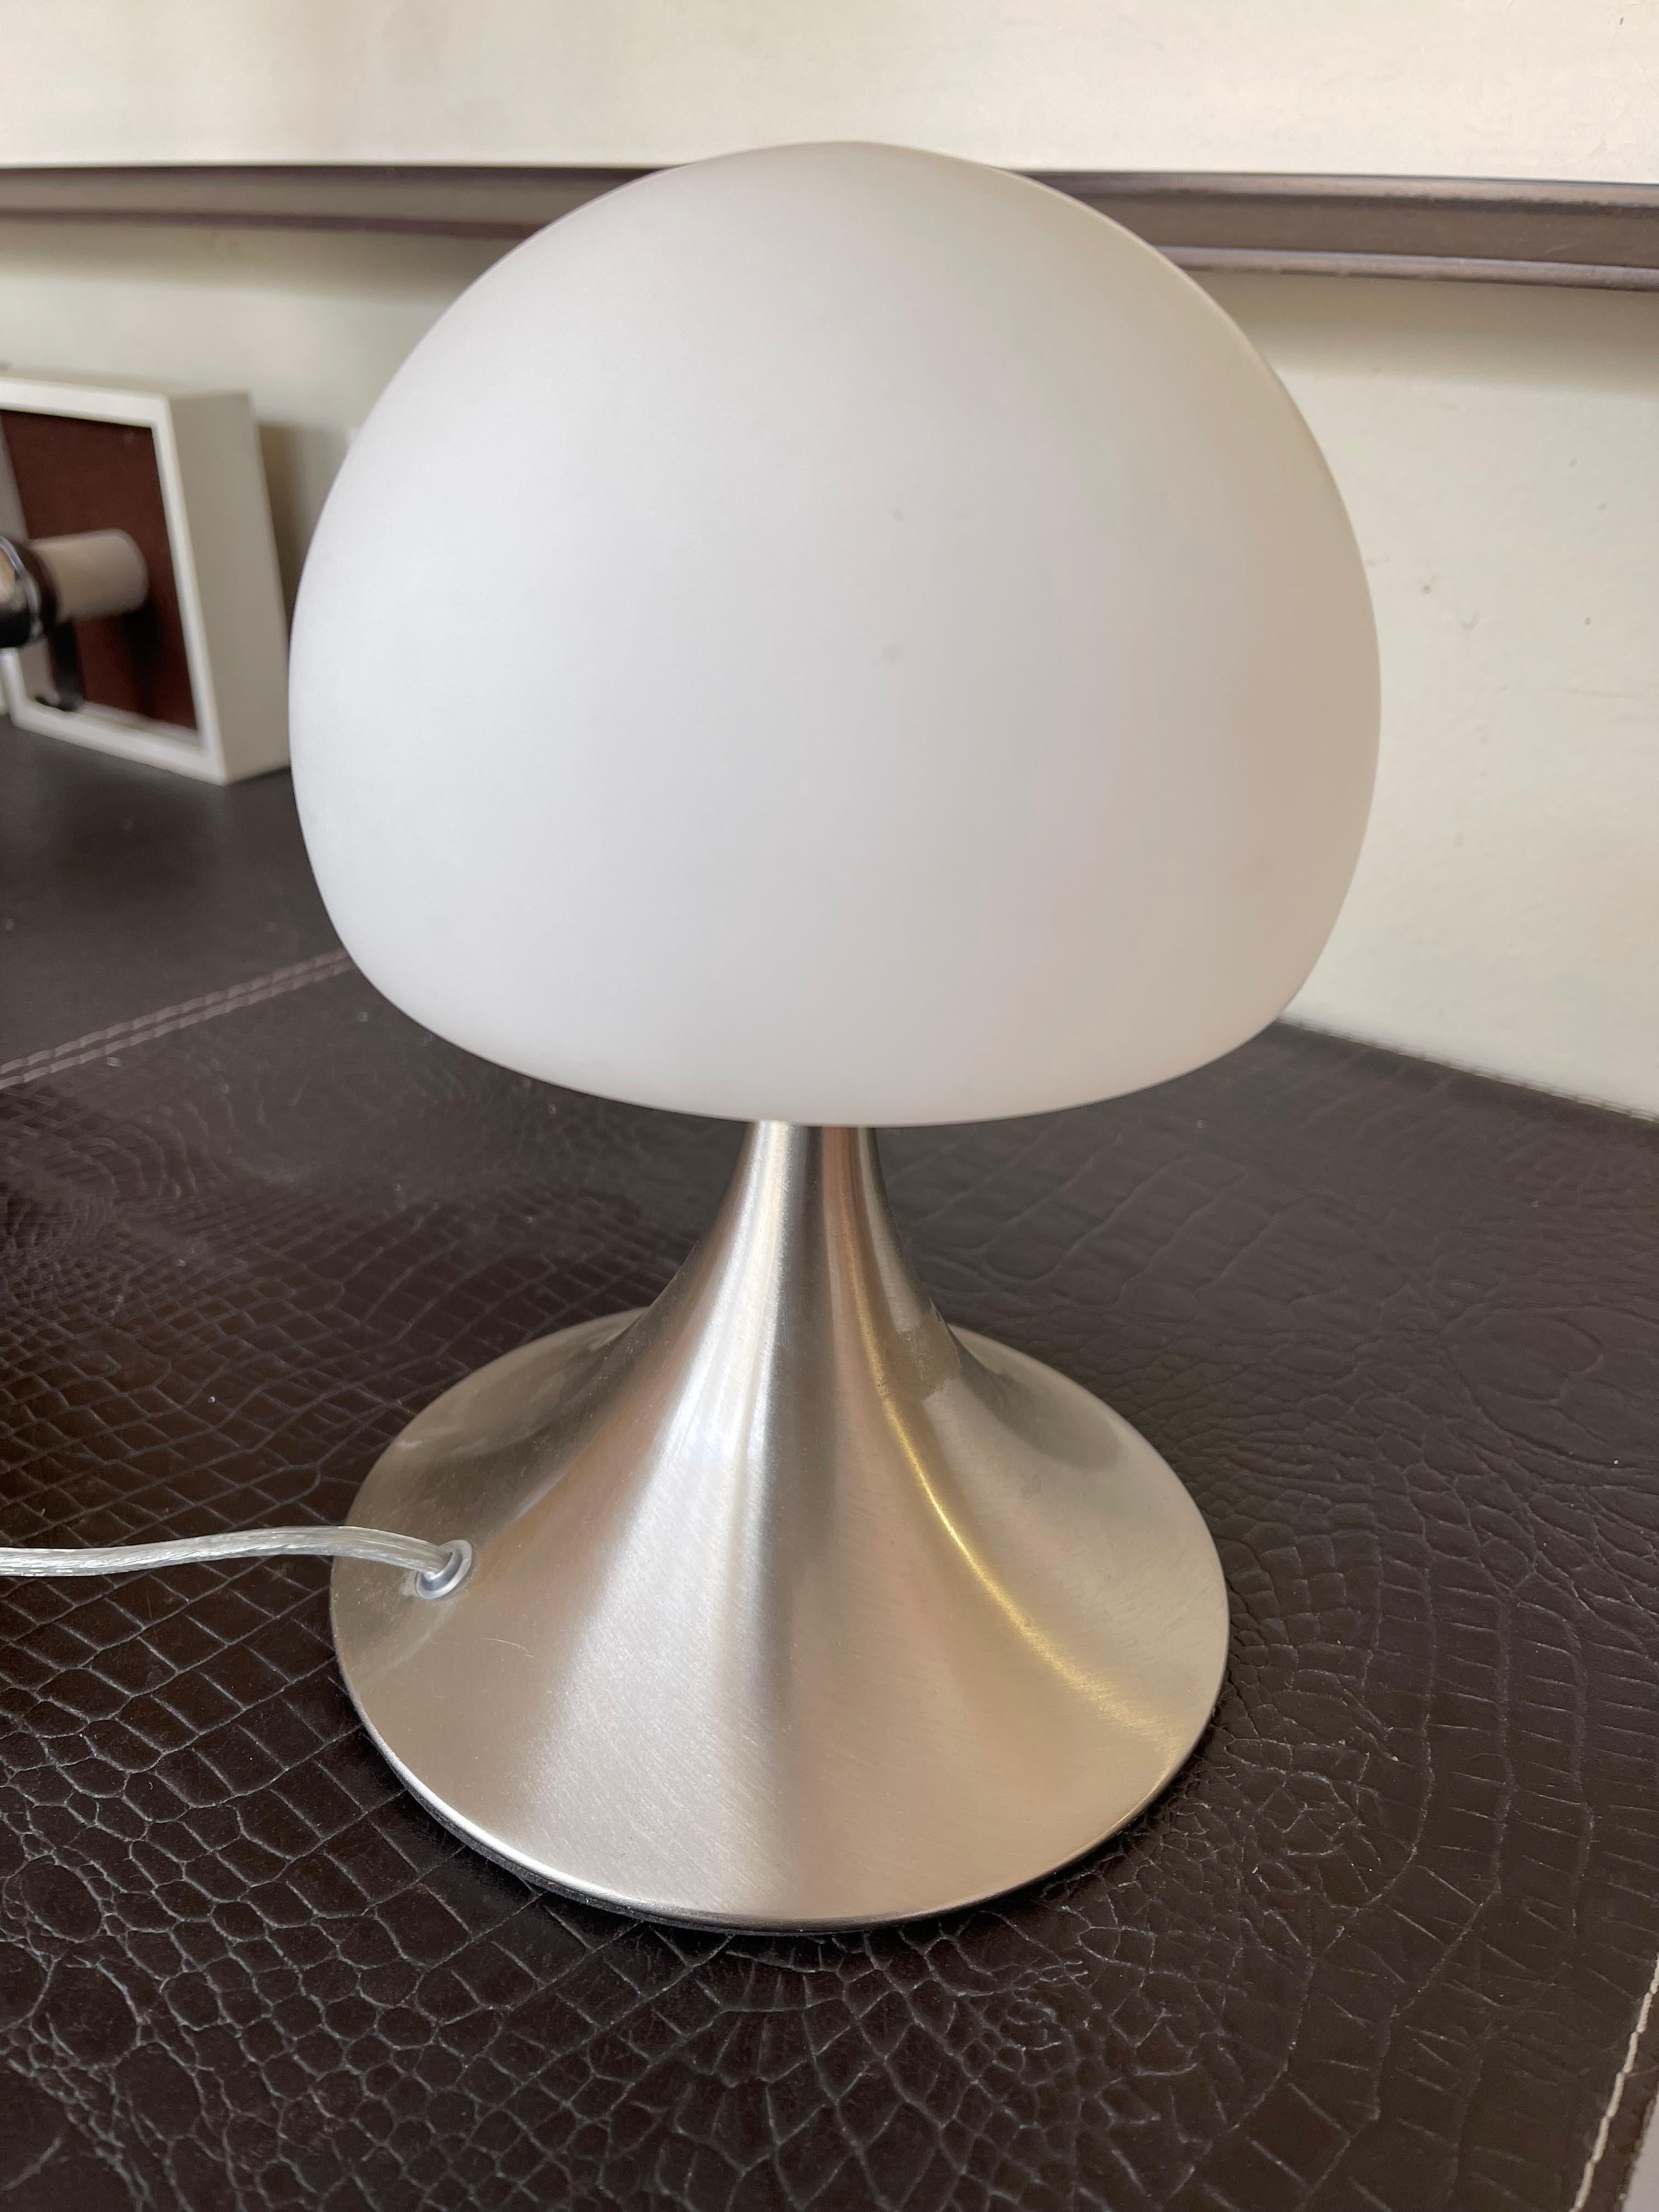 Other Vintage mushroom-shaped table or bedside lamps For Sale